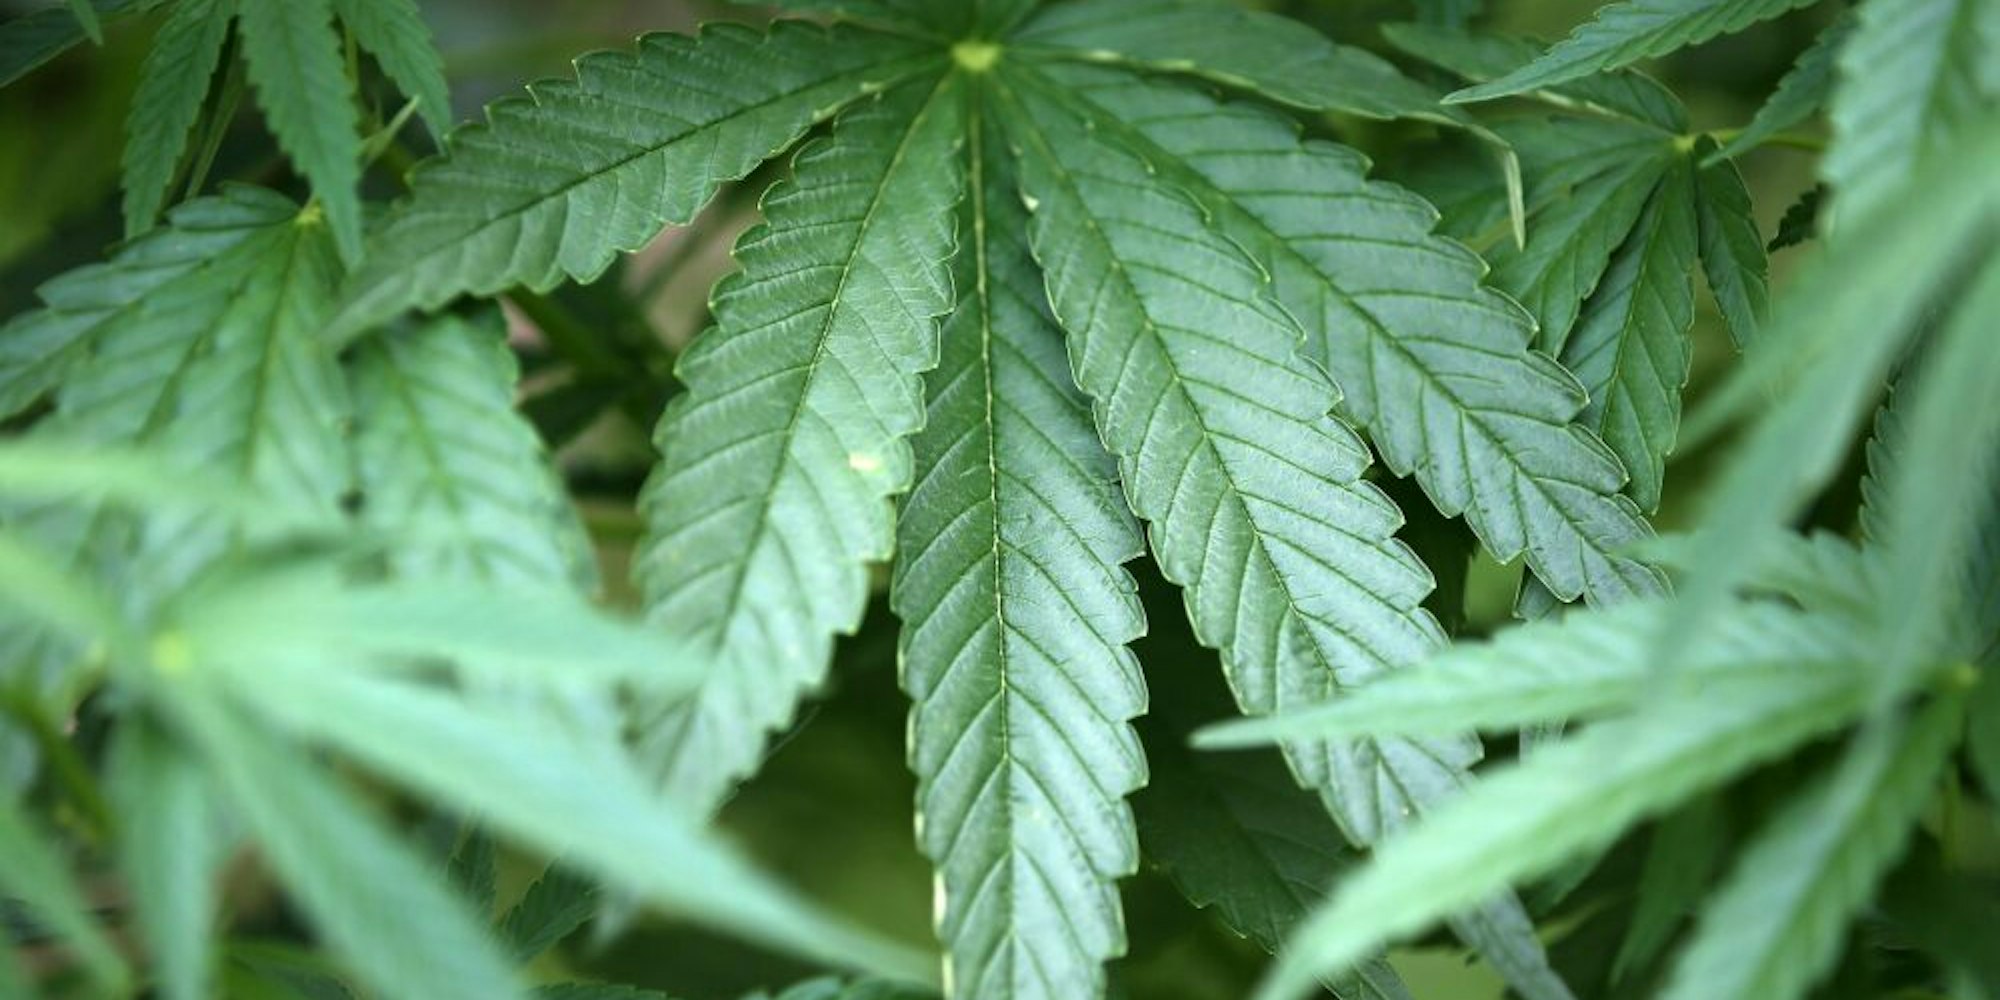 Cannabispflanzen wollte die Bande züchten, um Marihuana daraus zu gewinnen. Doch der Plan flog auf.